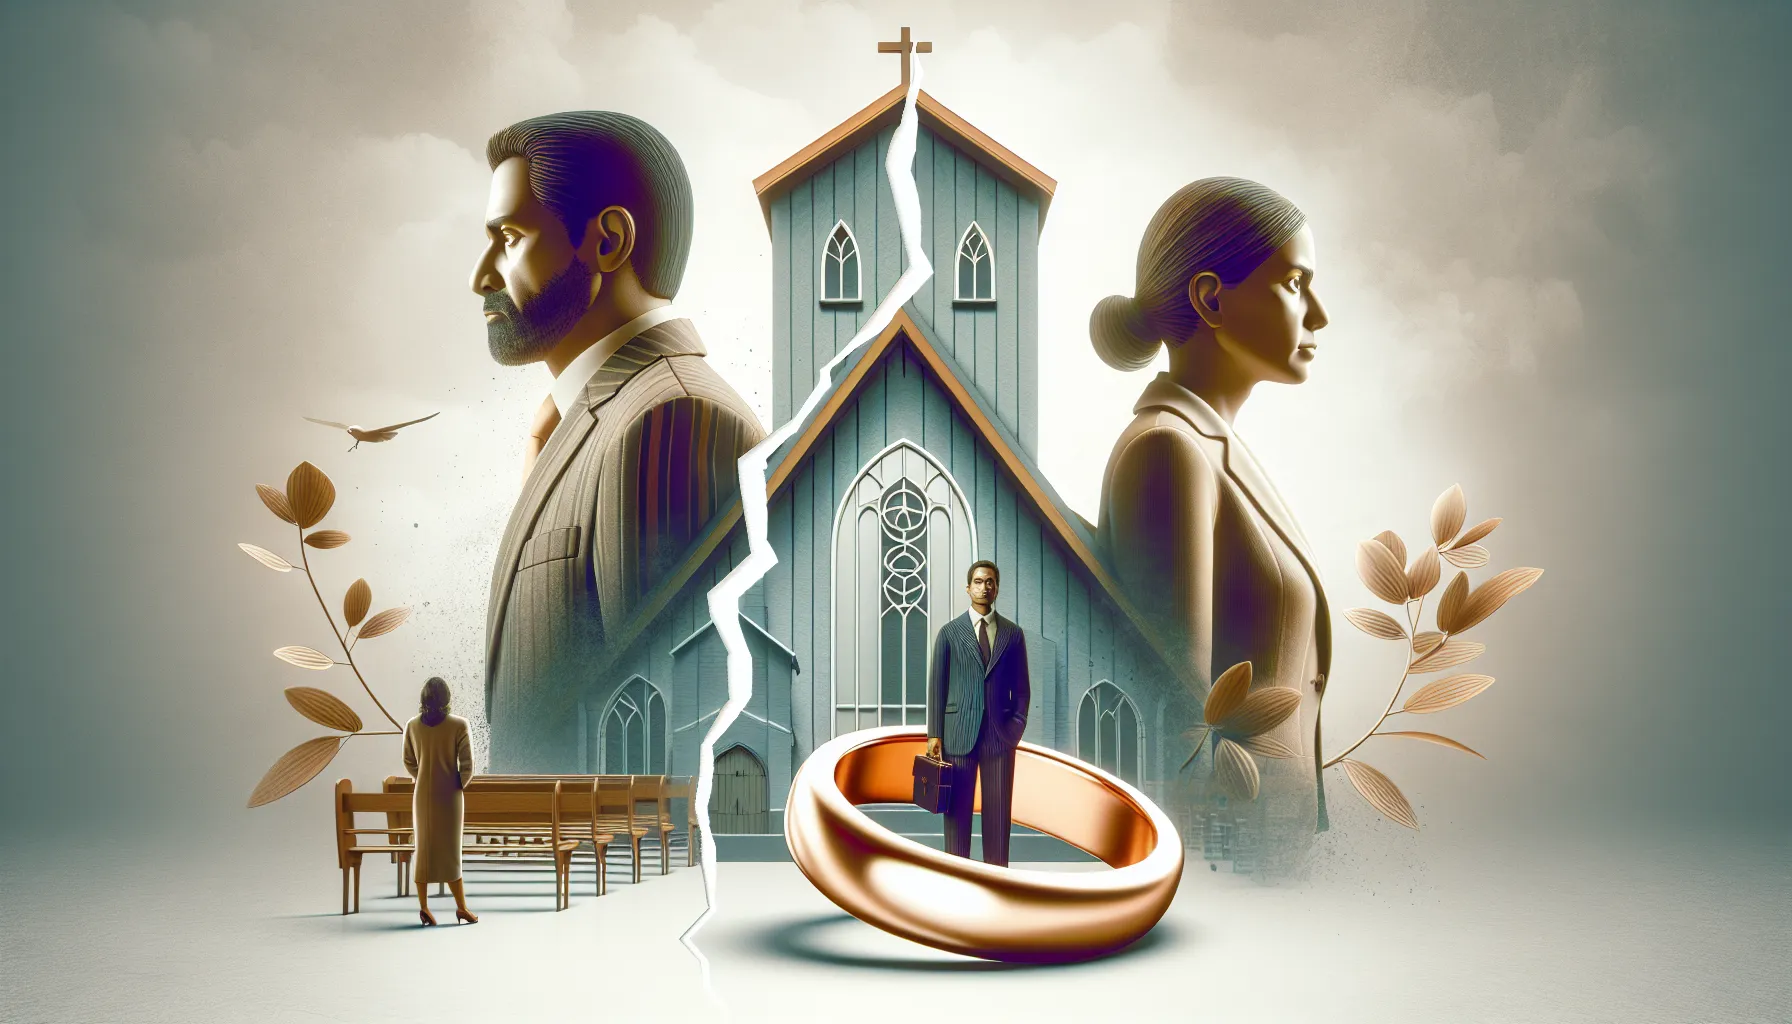 Imagen representativa sobre el debate de si un hombre divorciado puede convertirse en pastor de iglesia.